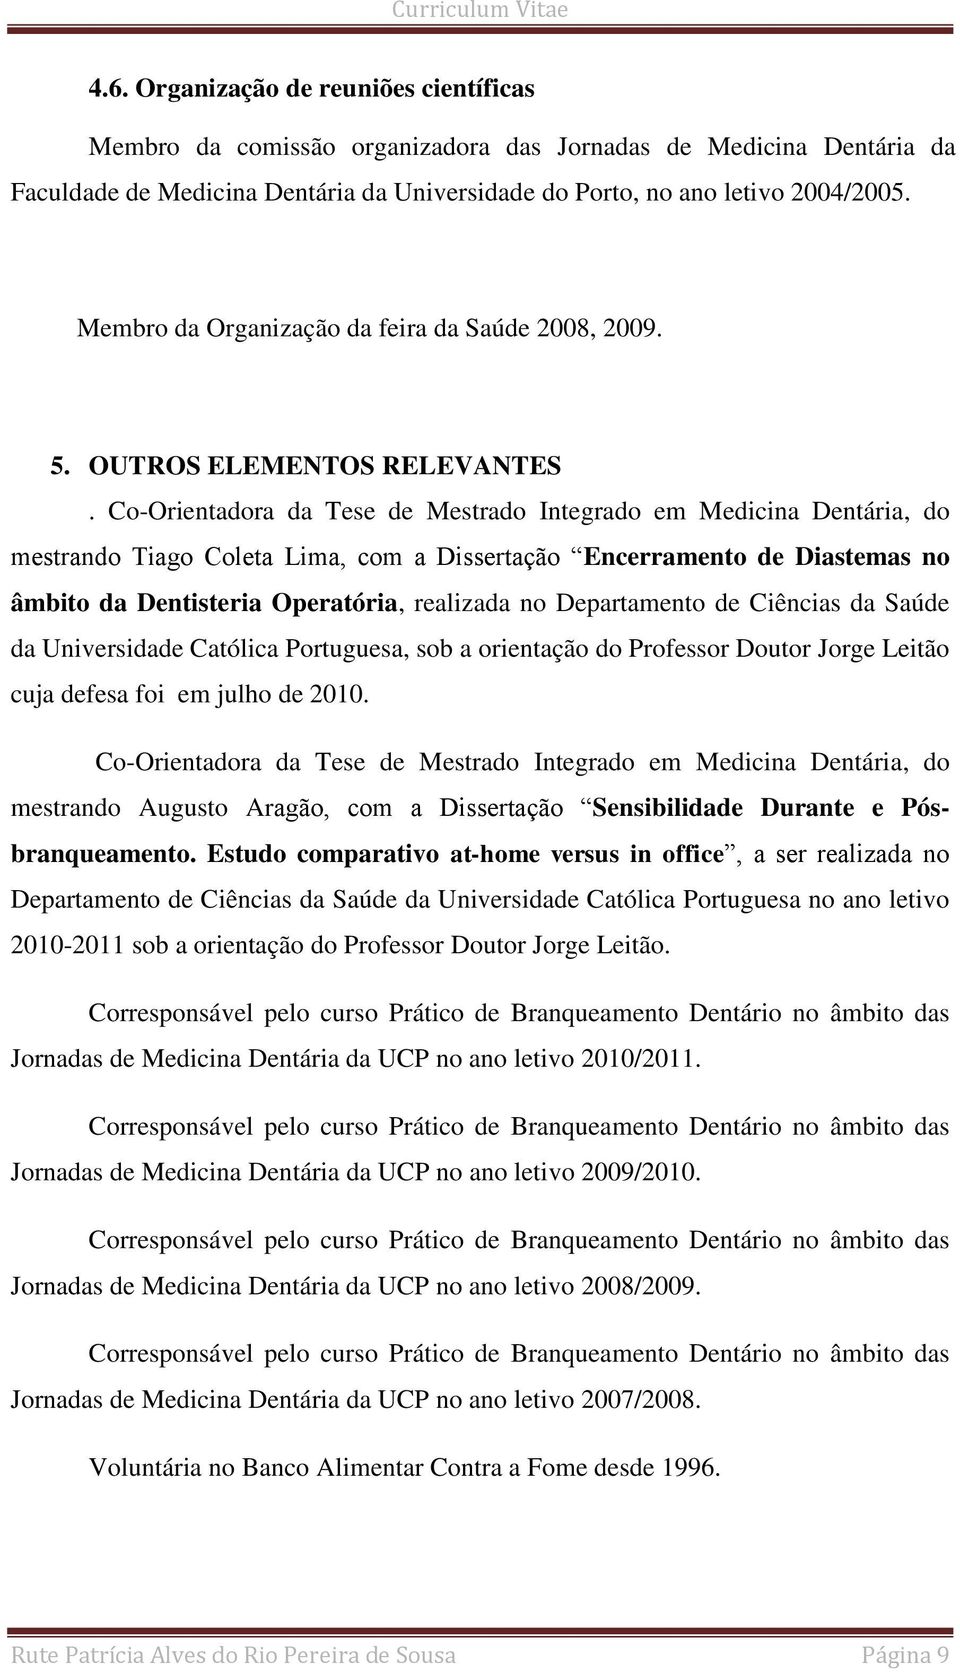 Co-Orientadora da Tese de Mestrado Integrado em Medicina Dentária, do mestrando Tiago Coleta Lima, com a Dissertação Encerramento de Diastemas no âmbito da Dentisteria Operatória, realizada no